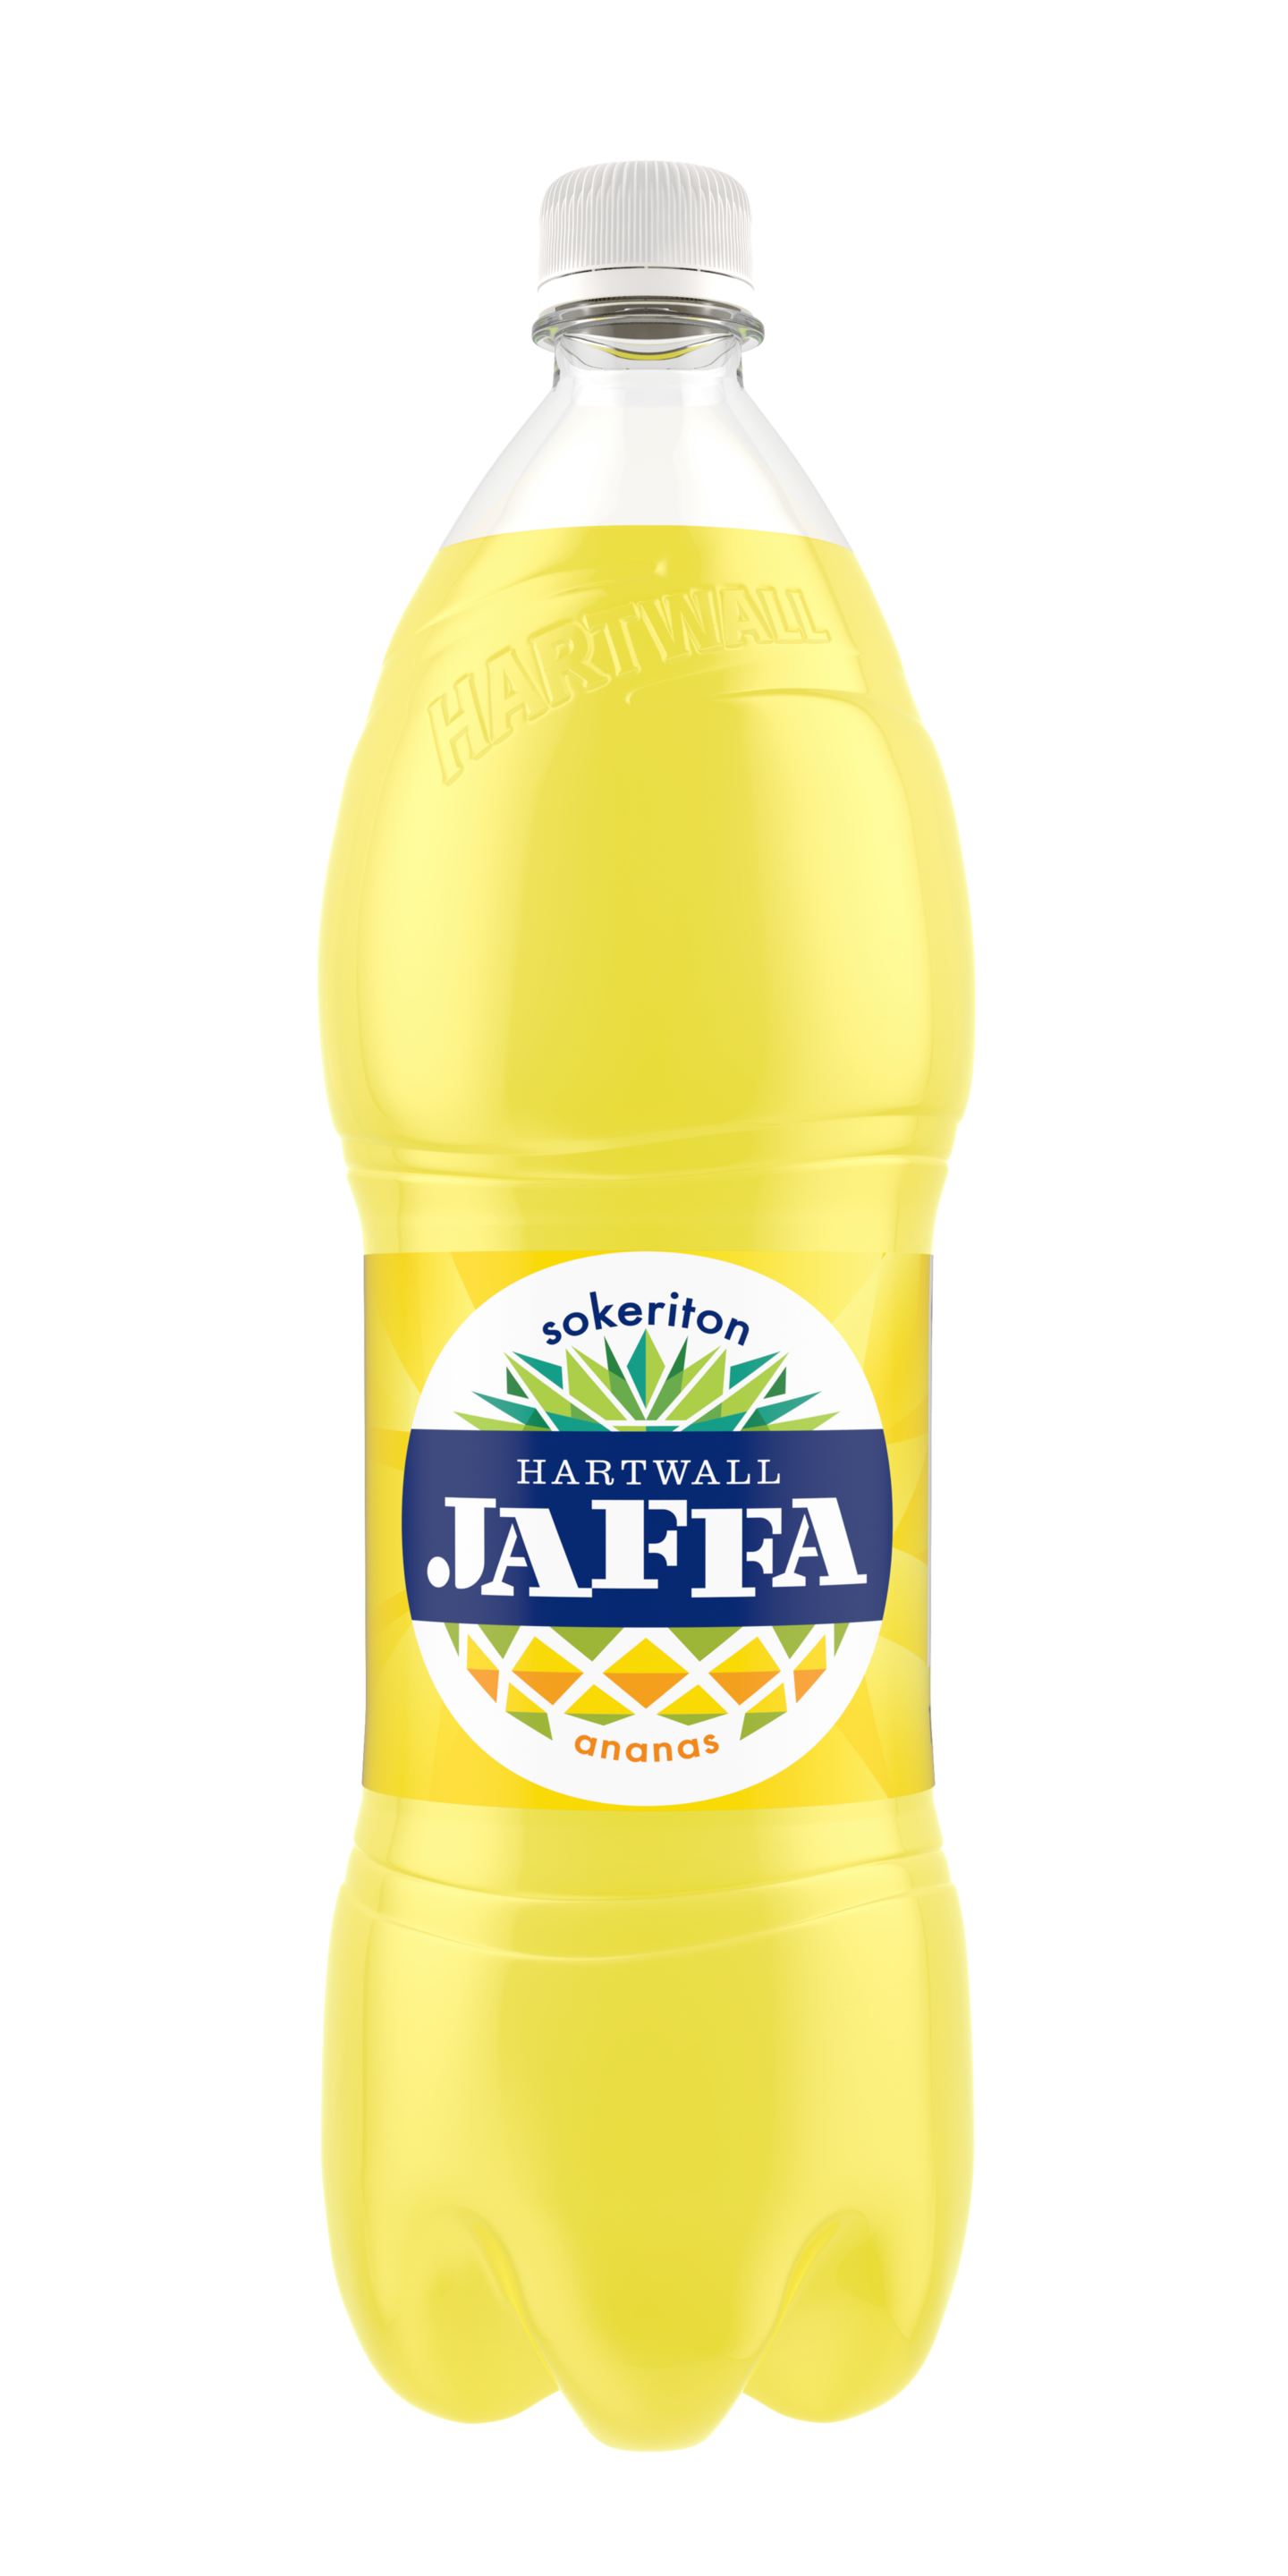 Hartwall Jaffa ananas sokeriton 1,5l DOLLY